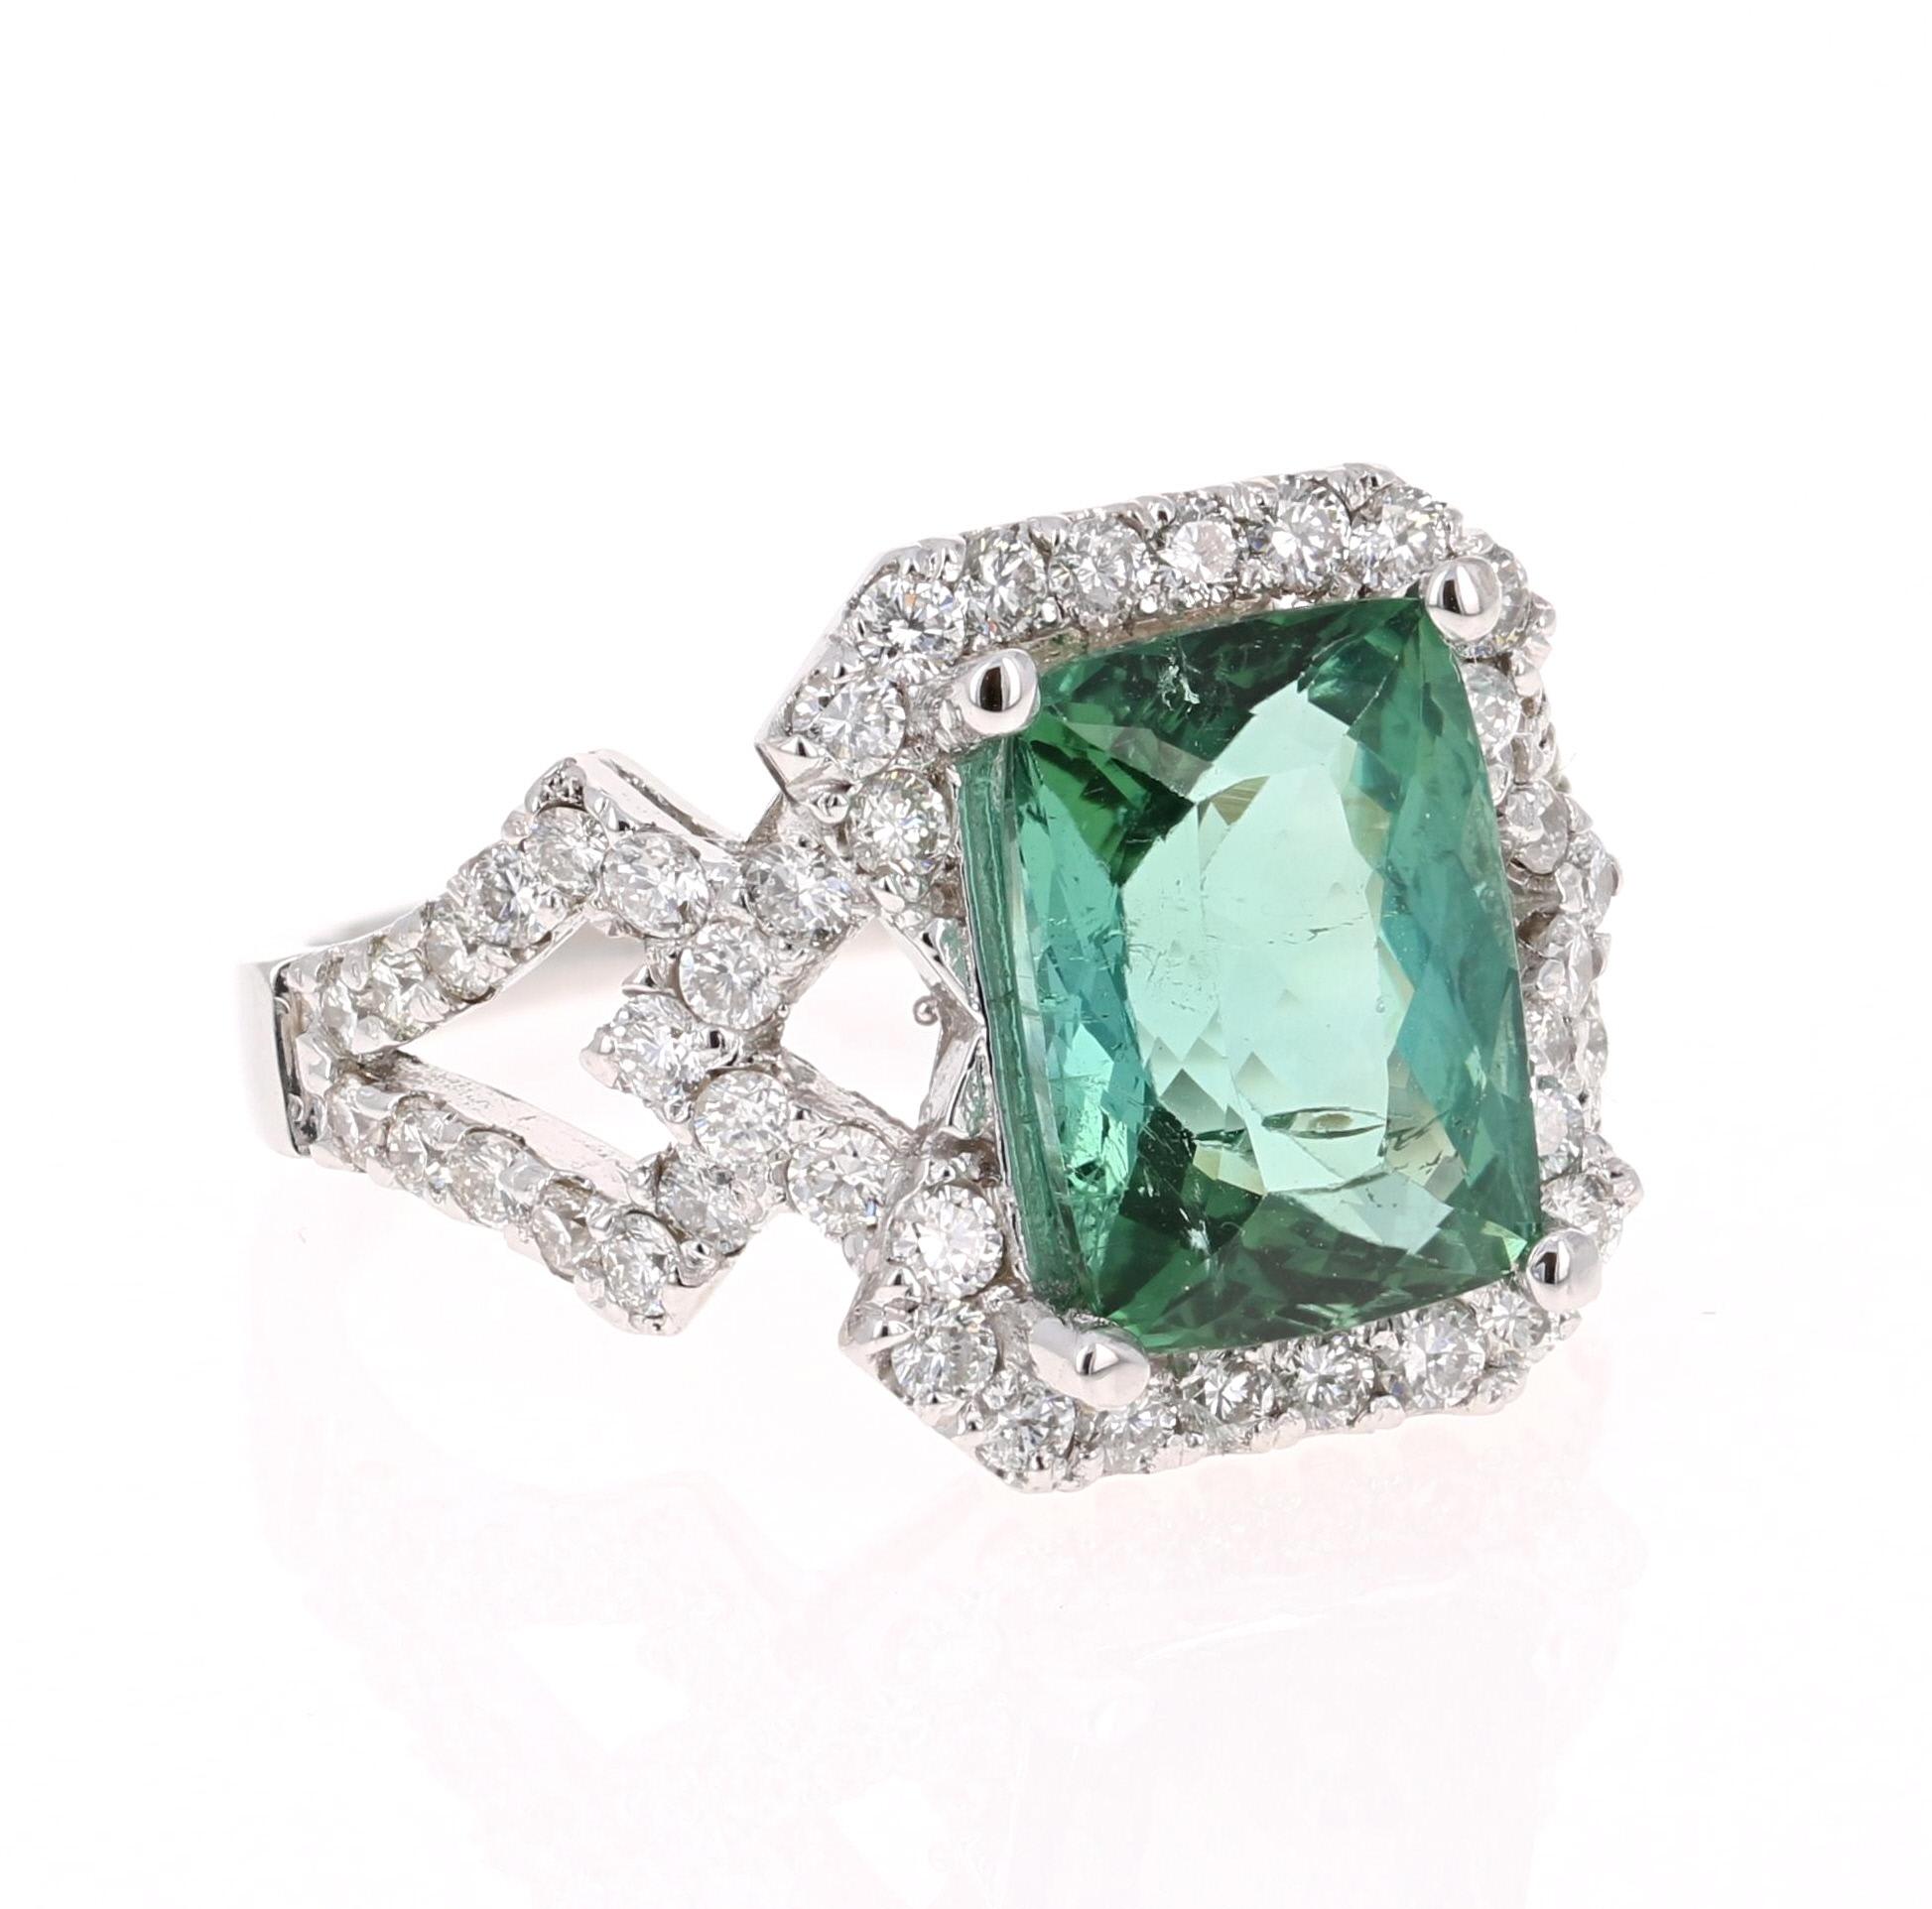 Wunderschöner & einzigartiger Cocktail-Ring!

Dieser Ring hat eine STUNNING Emerald Cut Green Turmalin, dass 3,83 Karat wiegt. Um den Turmalin herum schweben 62 Diamanten im Rundschliff mit einem Gewicht von 0,98 Karat. Das Gesamtkaratgewicht des